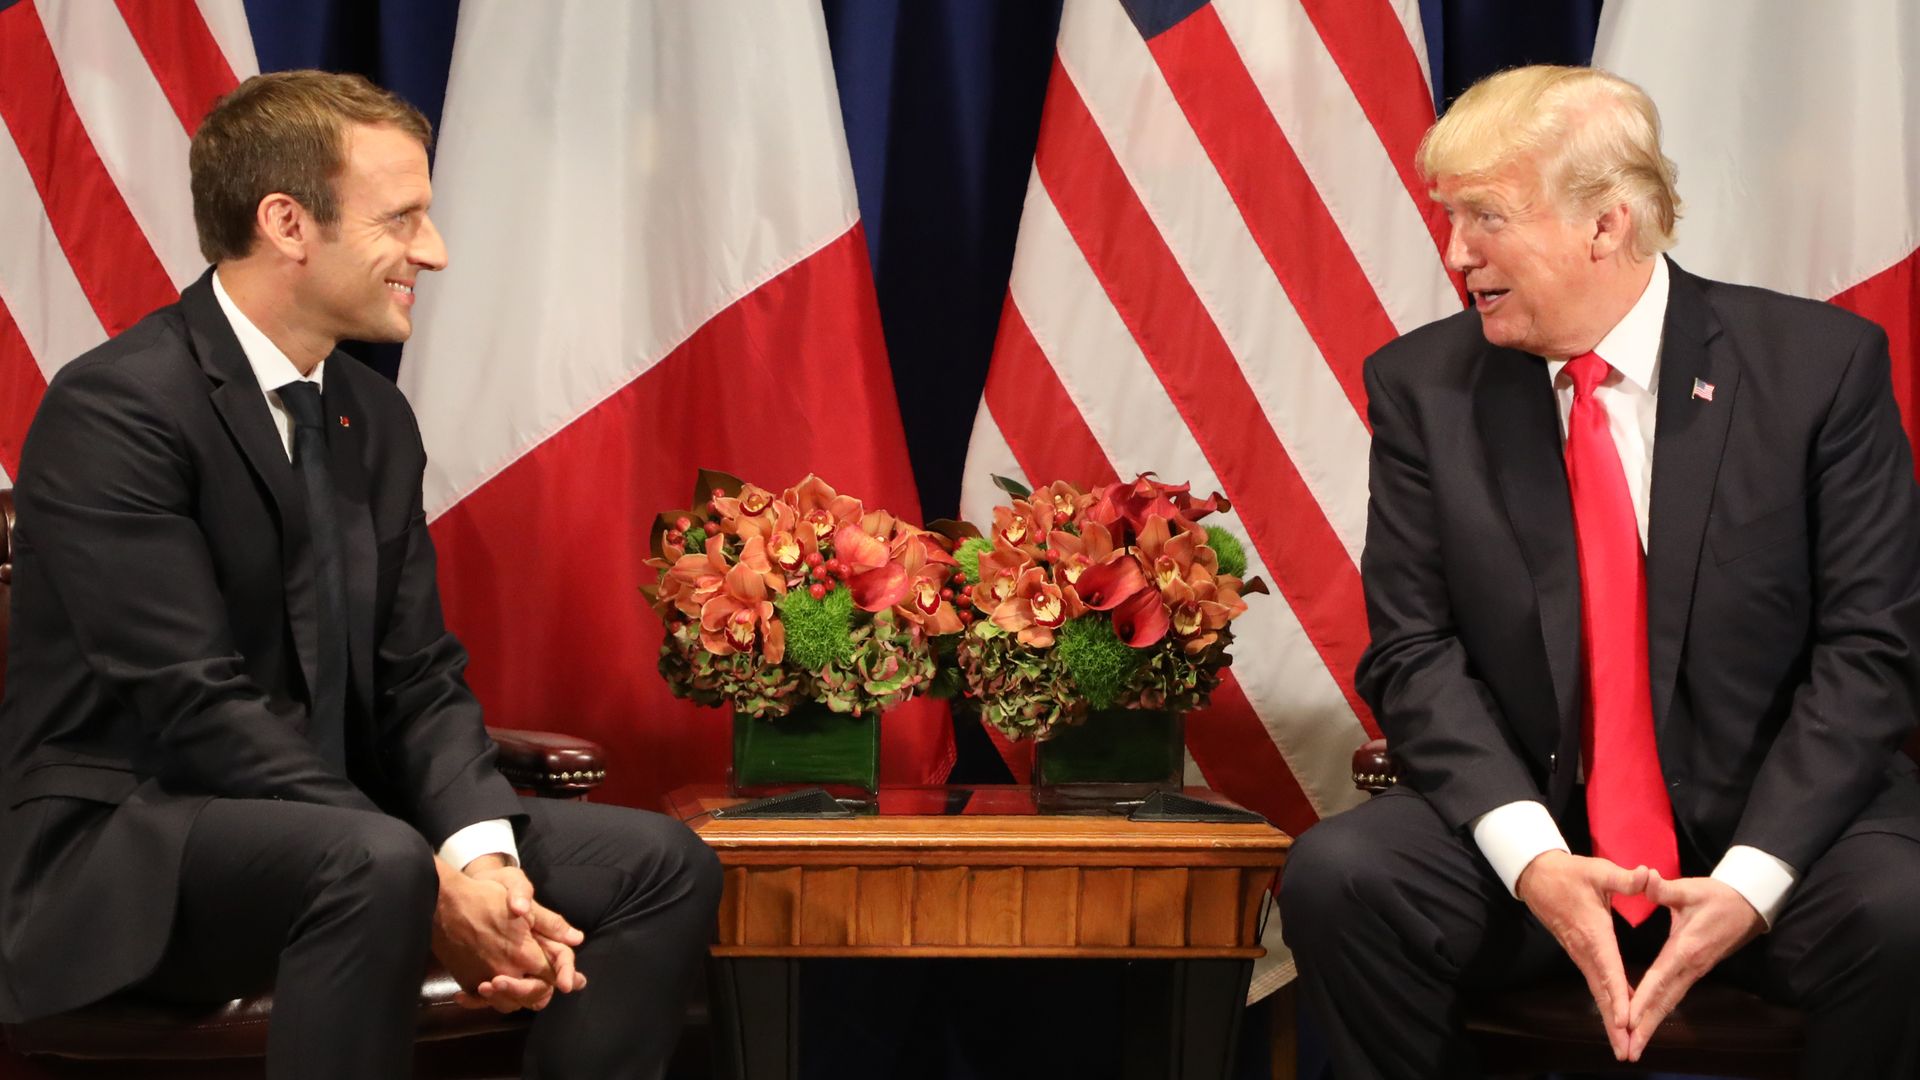 Emmanuel Macron and Donald Trump.